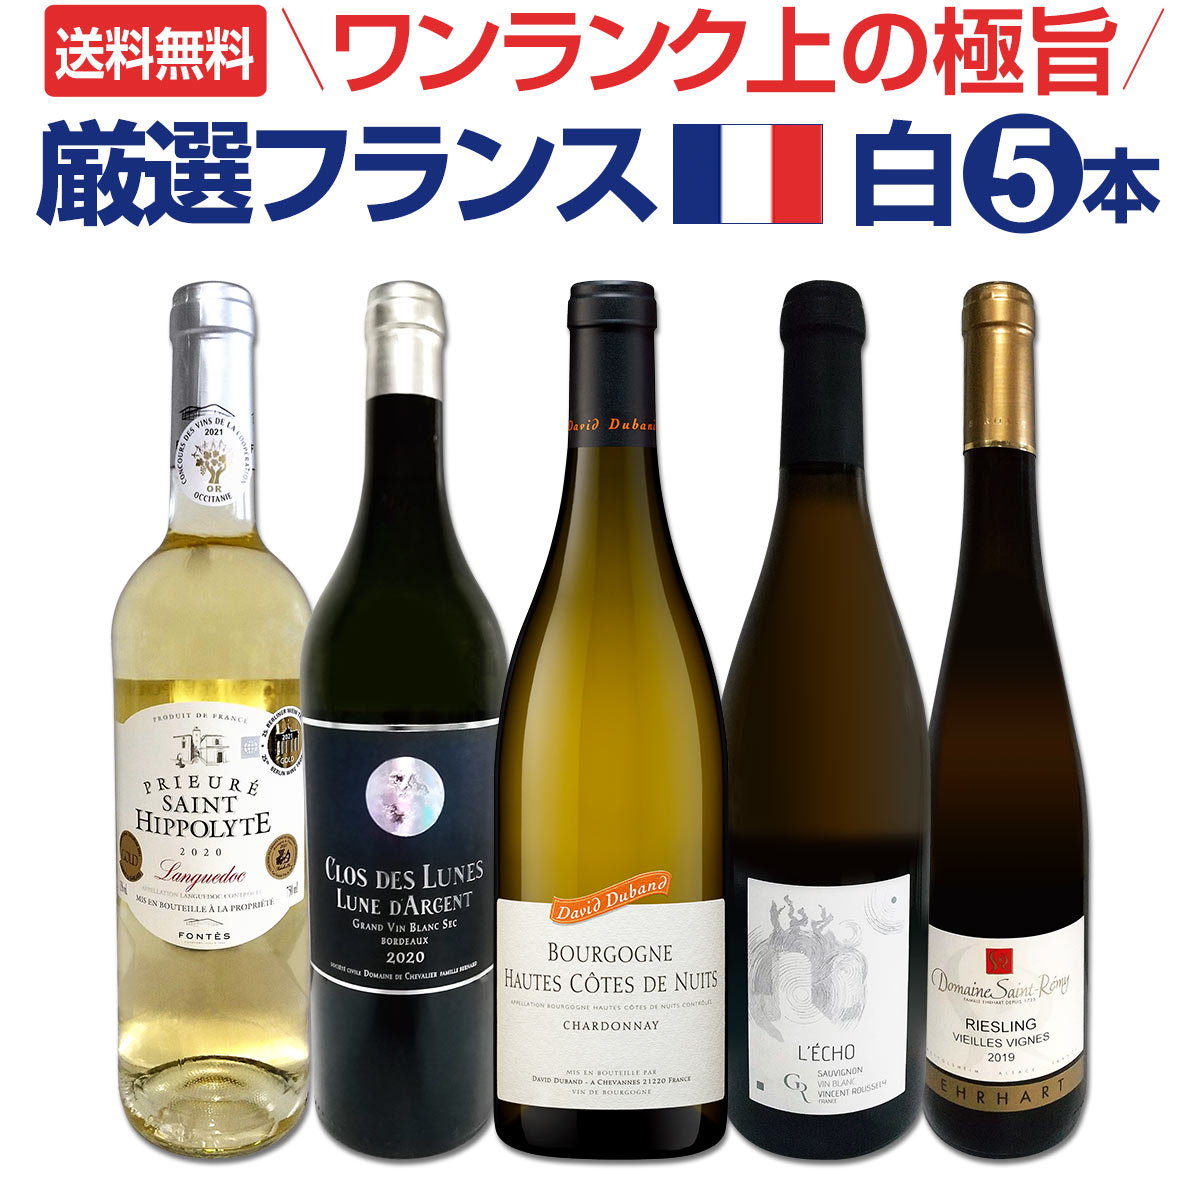 【送料無料】ワンランク上の厳選極旨フランス白ワイン5本セット!!